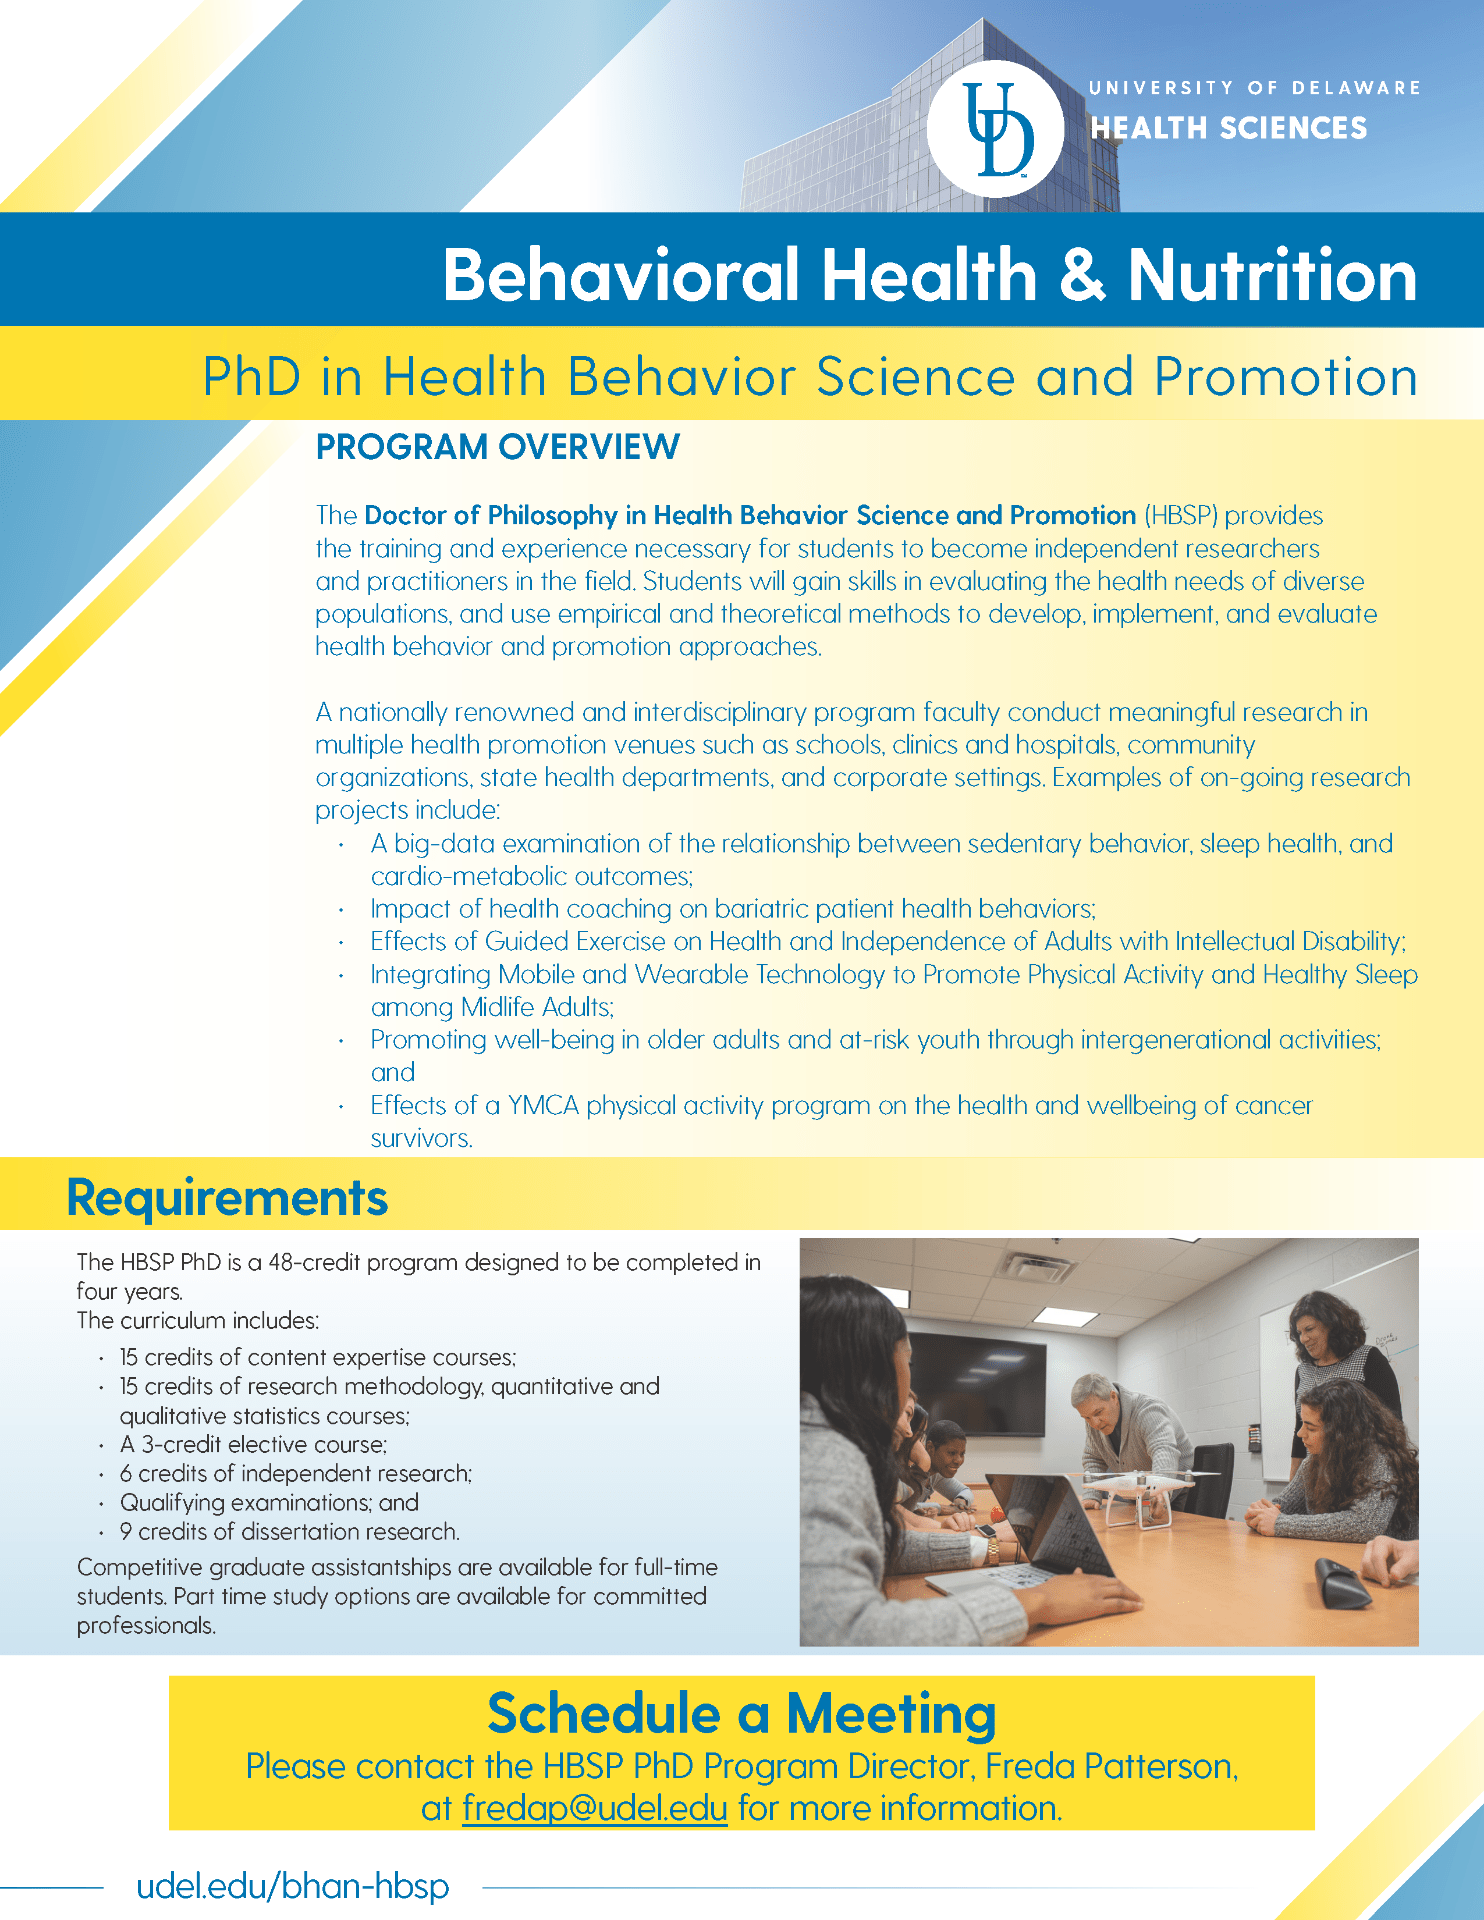 phd health behavior